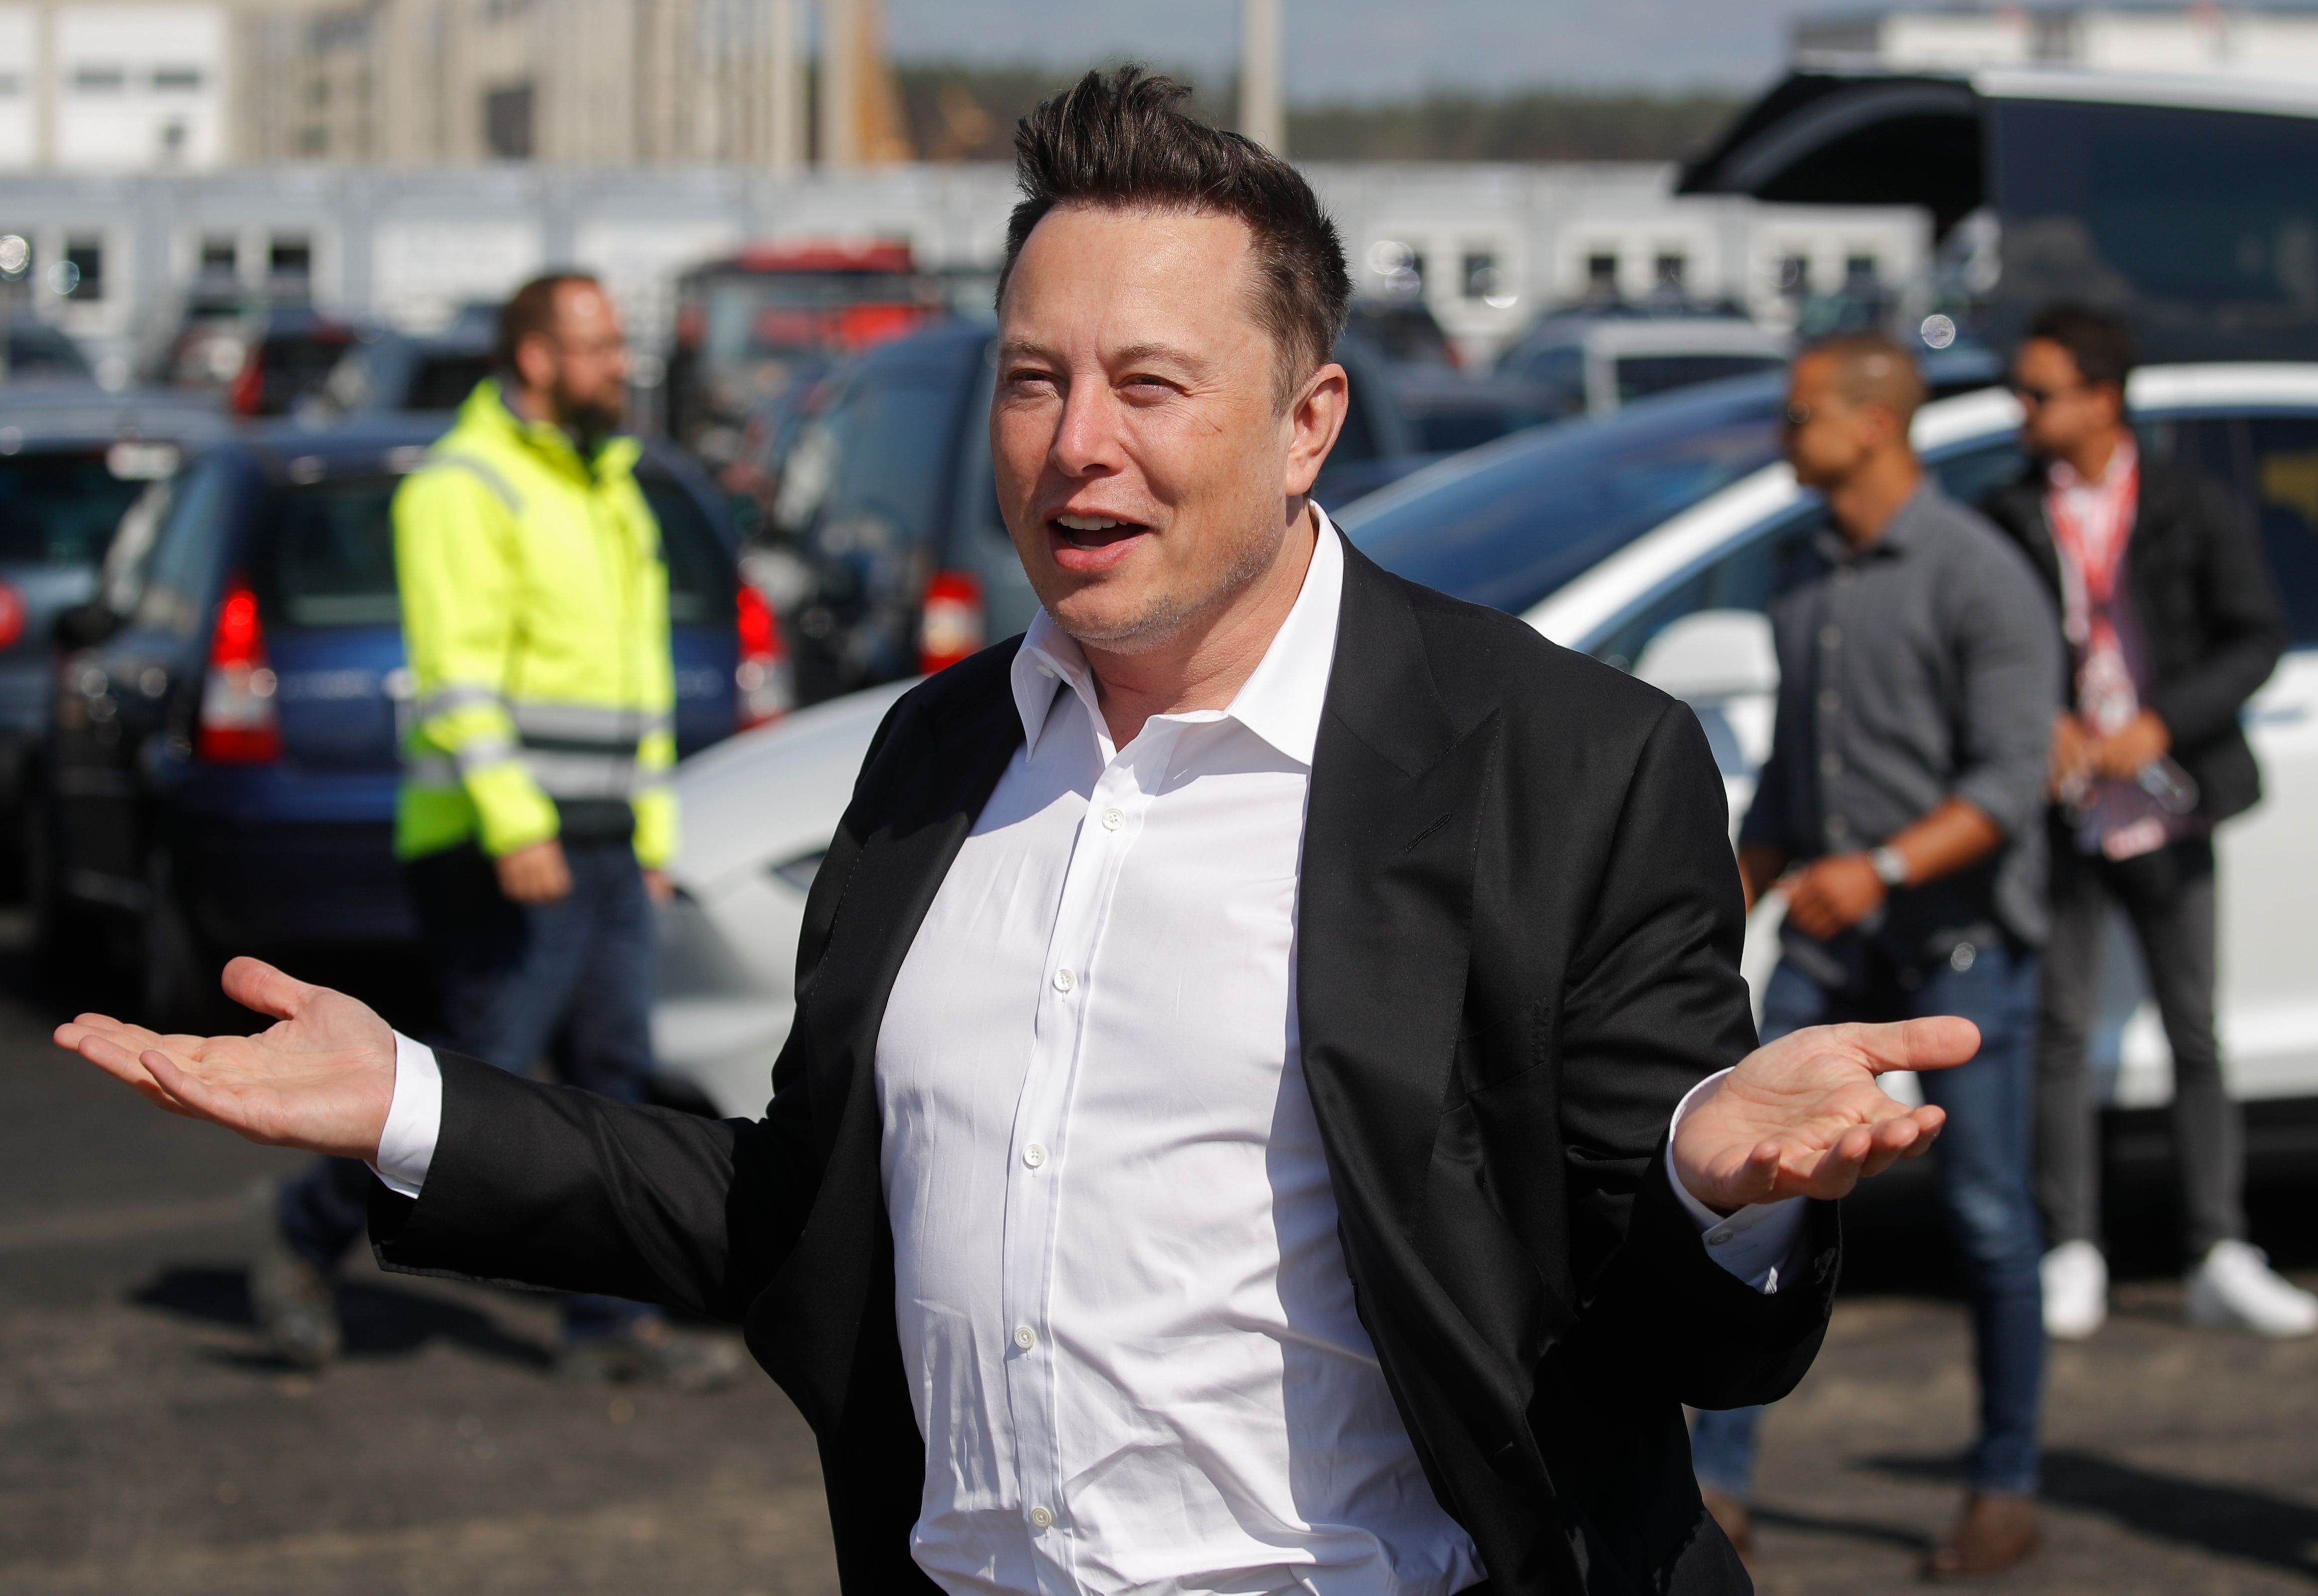 Foto de archivo del CEO de Tesla Elon Musk en una reciente visita a Berlín, Alemania. Musk dice que dio positivo al coronavirus. (Foto Prensa Libre: AFP)